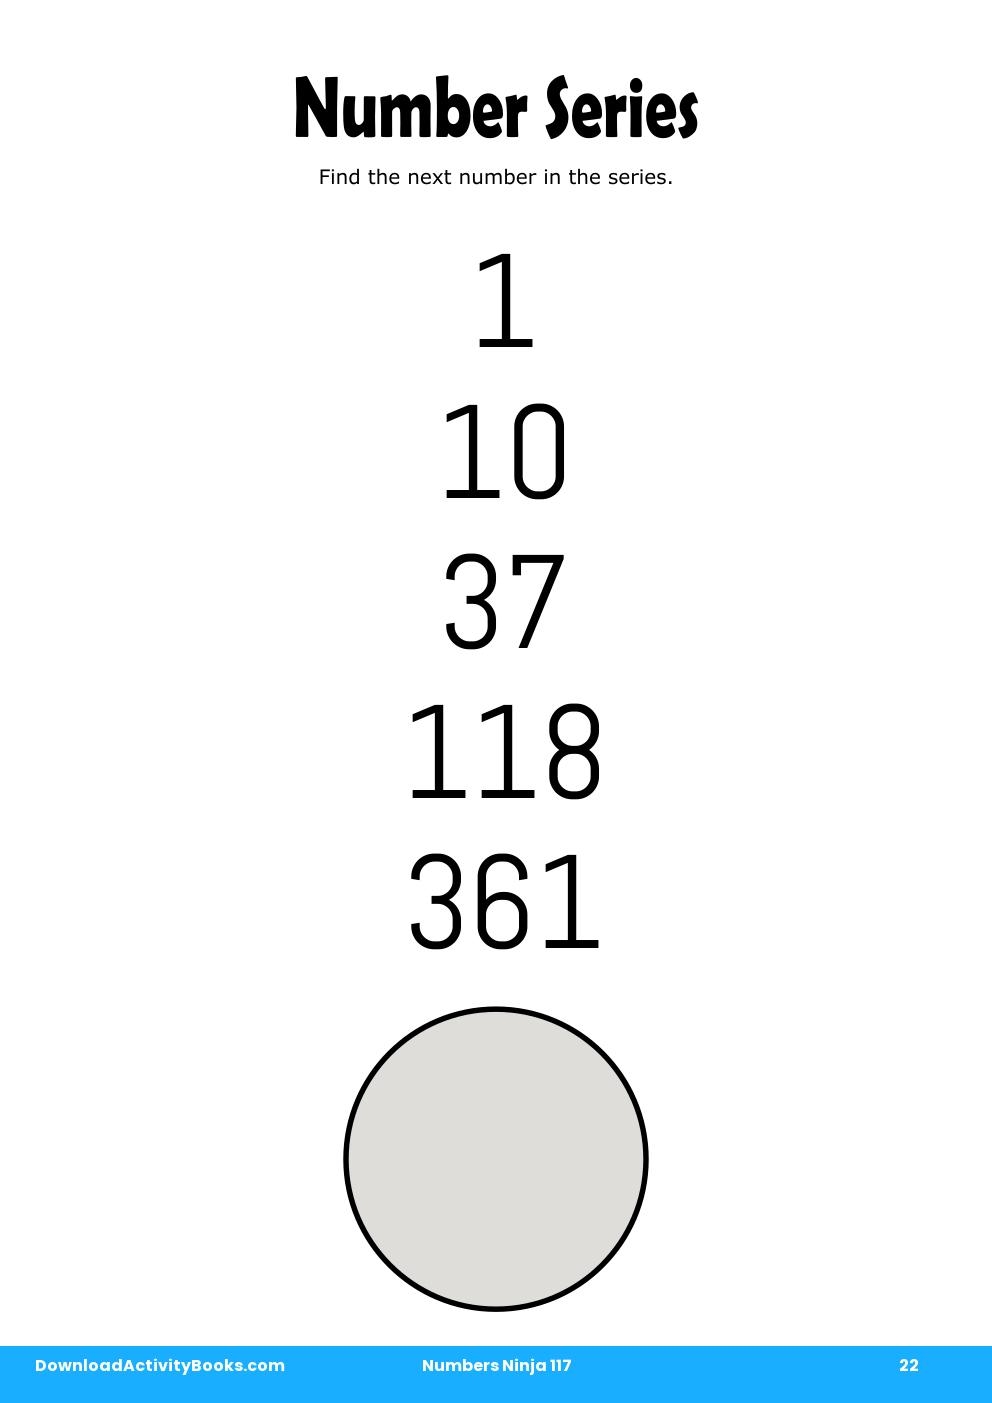 Number Series in Numbers Ninja 117